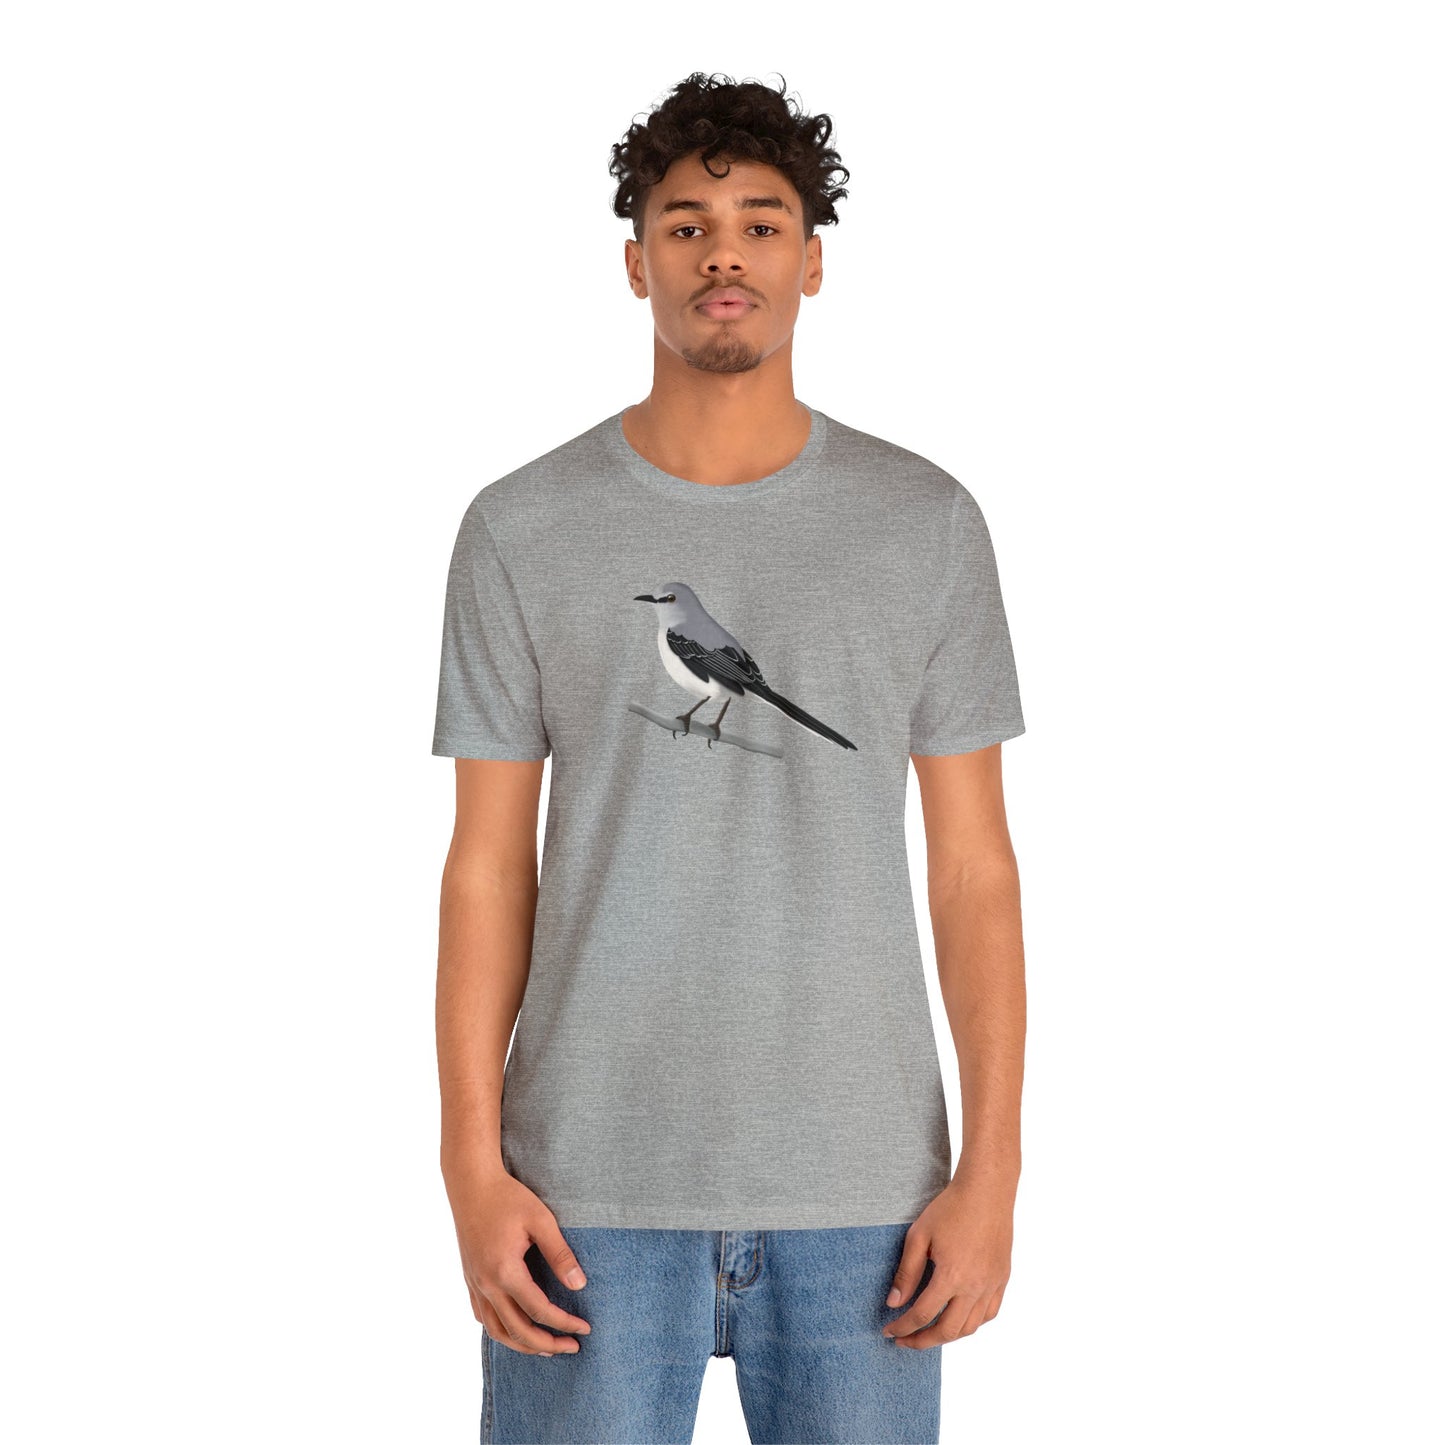 Mockingbird Bird Tee